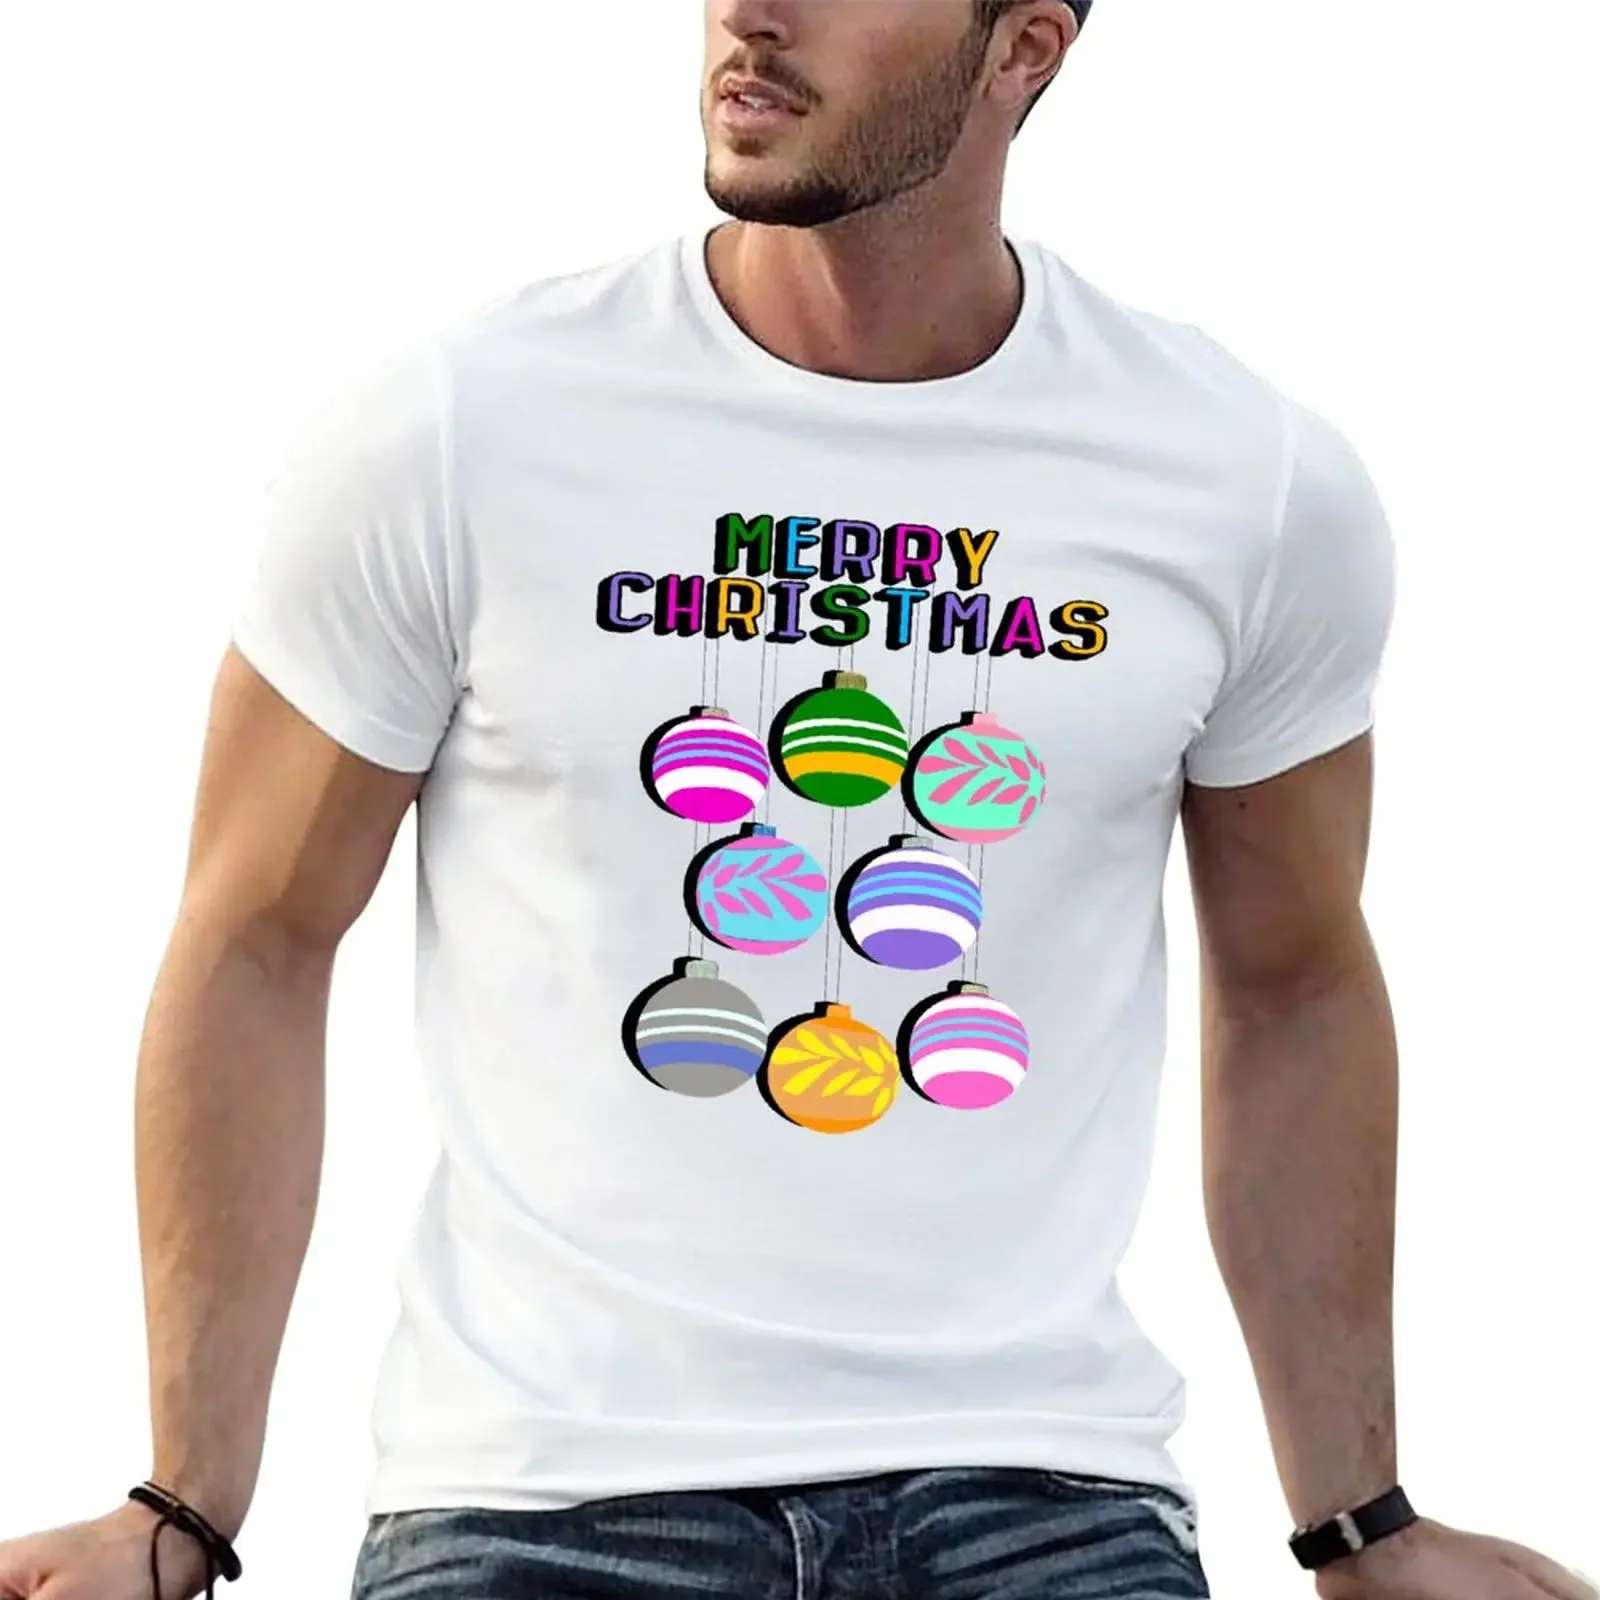 

Рождественская Ретро футболка с рисунком, черные тяжелые женские топы, мужские футболки с графическим рисунком